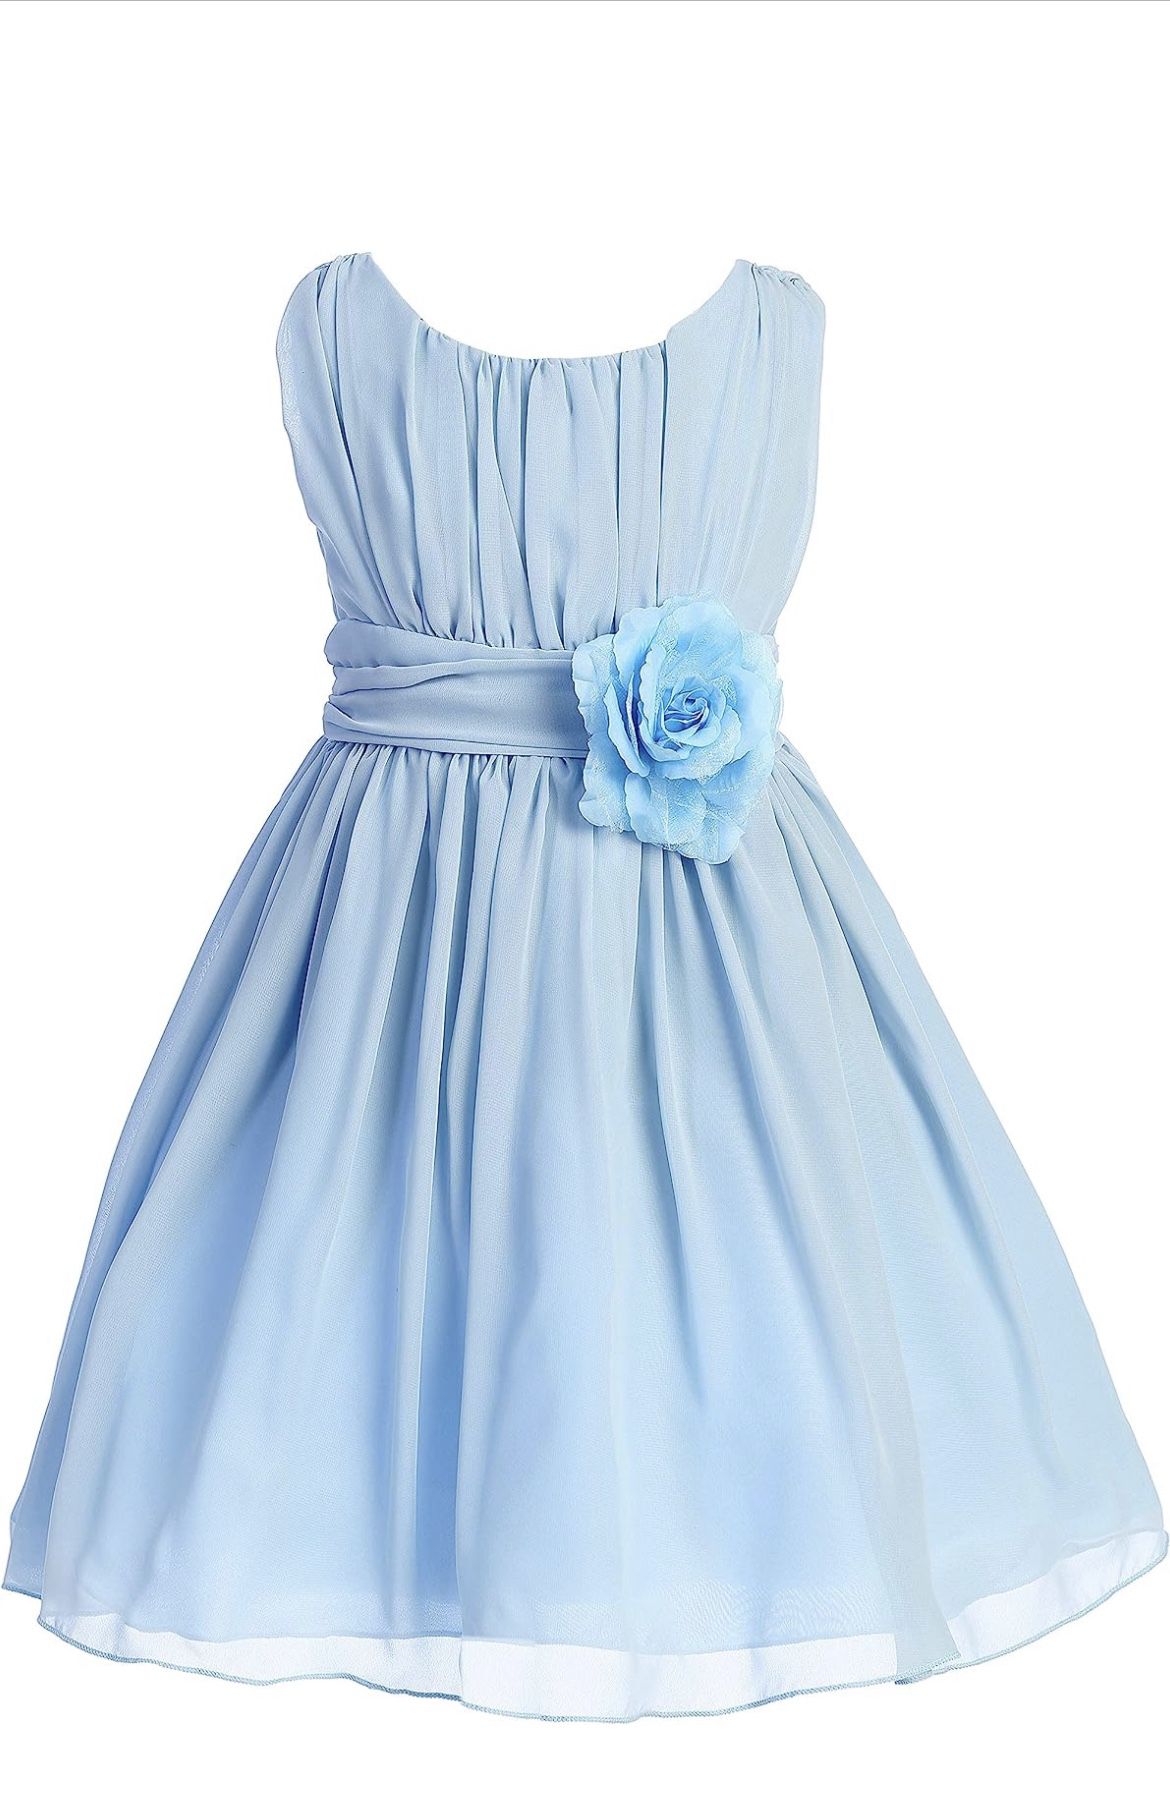 Girls Blue Dress 